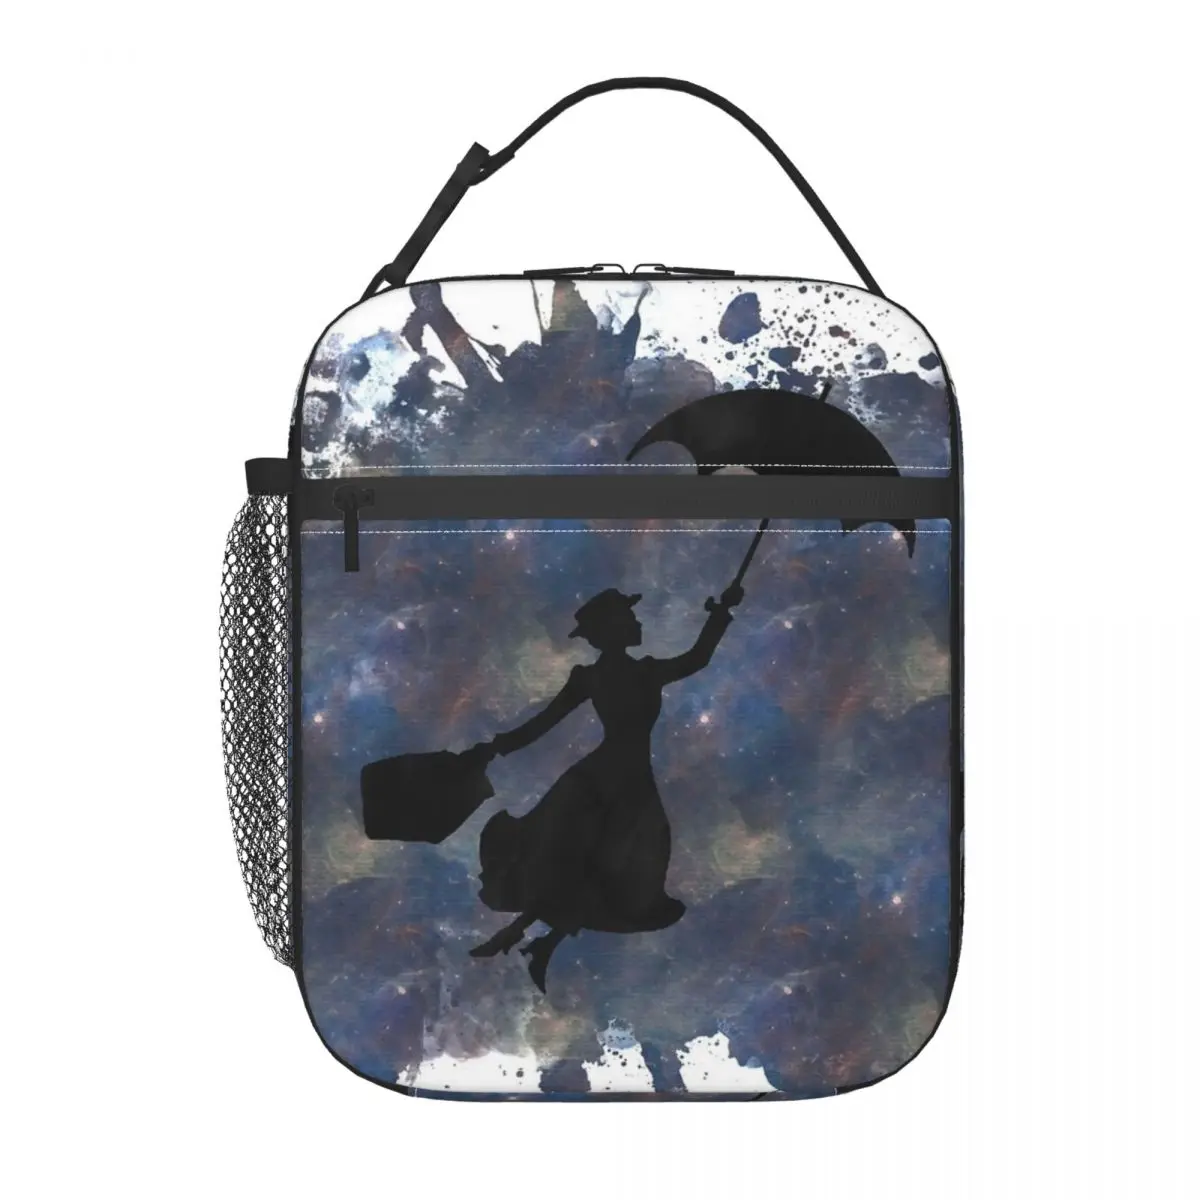 

Изолированная сумка для ланча Mary Poppins, праздничная ткань Оксфорд, офисный подарок на день рождения, настраиваемый